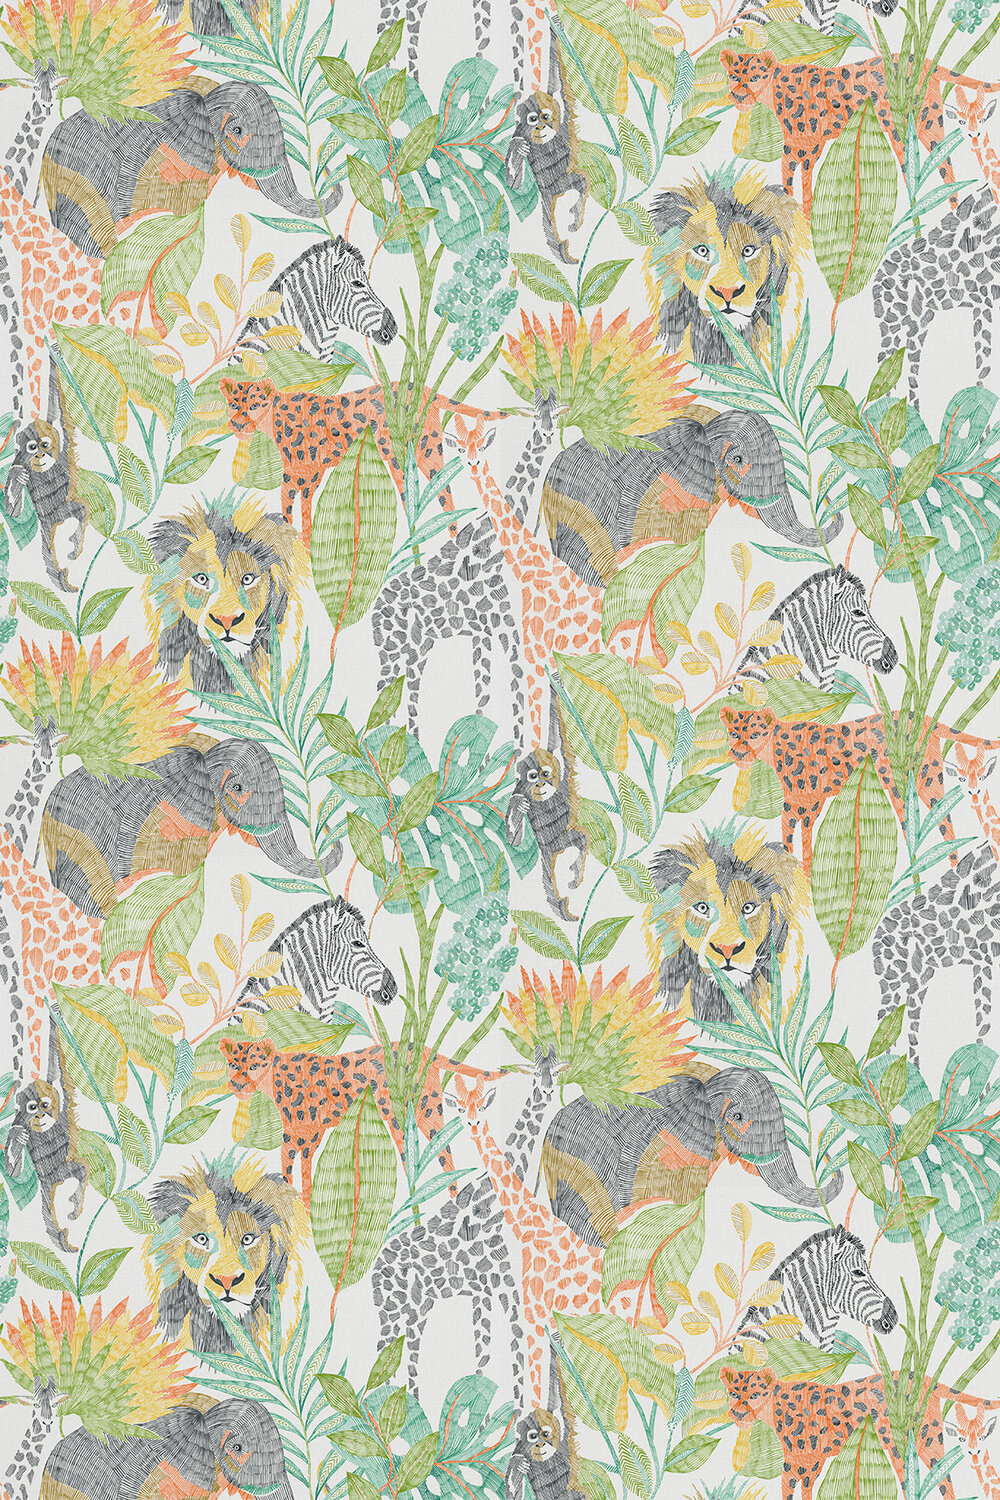 Into the Wild Fabric - Mandarin / Gekko / Pineapple - by Harlequin